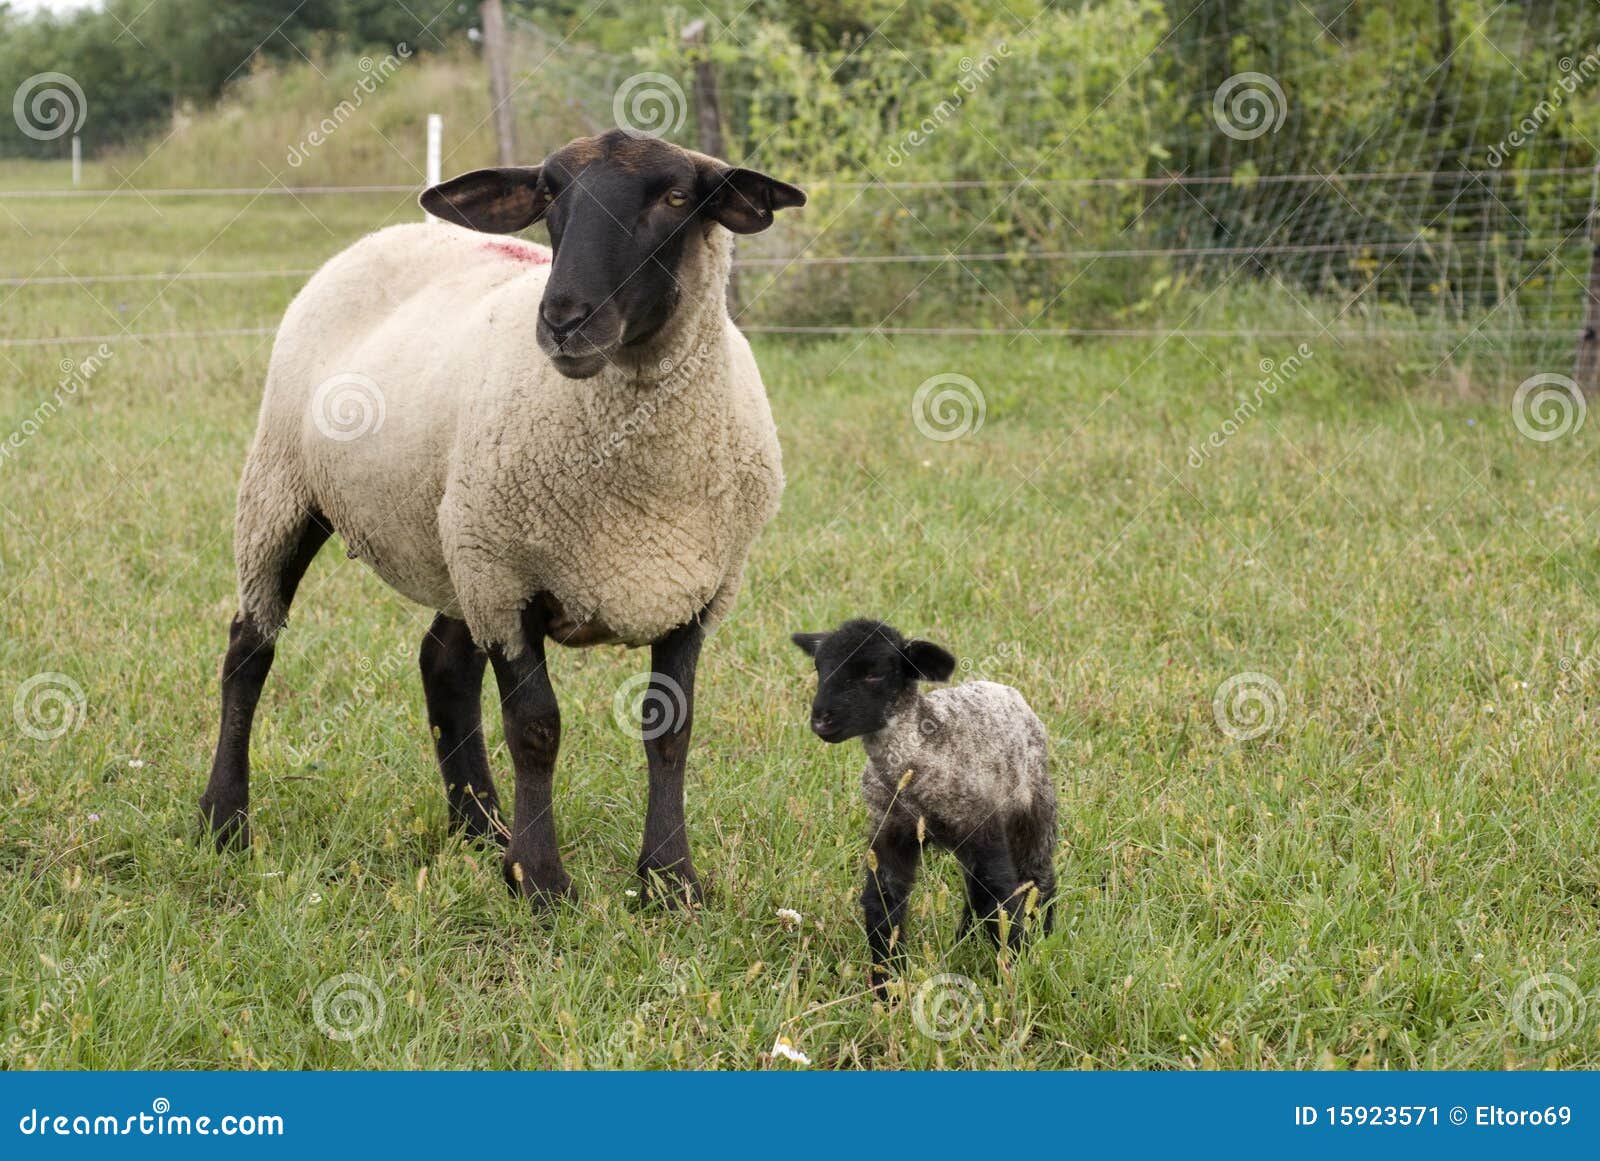 suffolk baby sheep